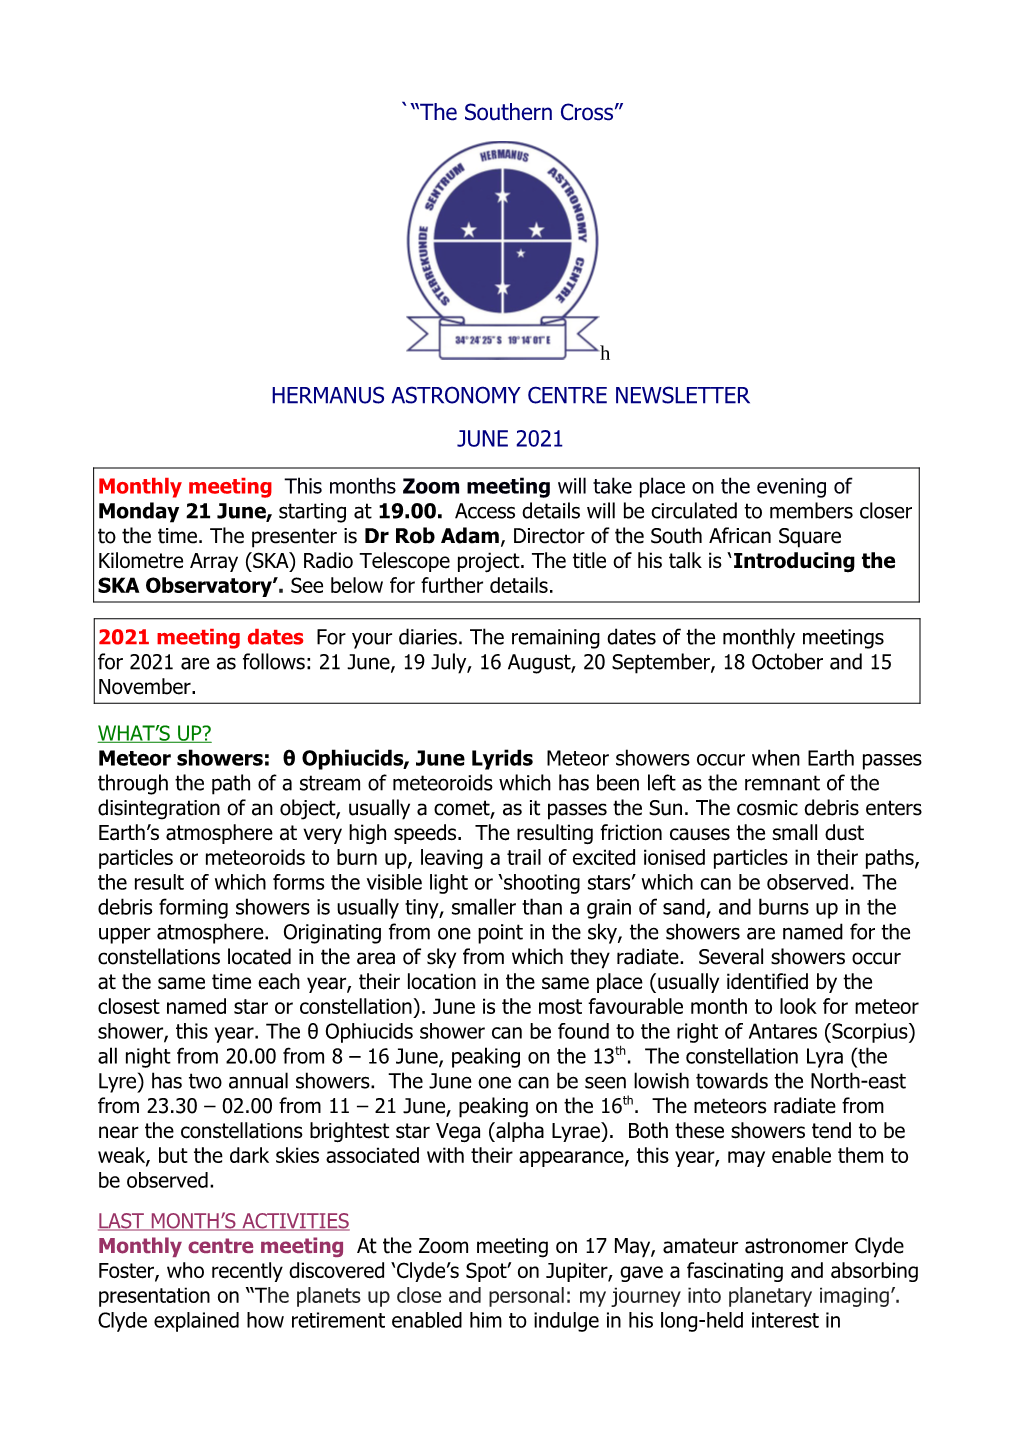 Hermanus Astronomy Centre Newsletter June 2021